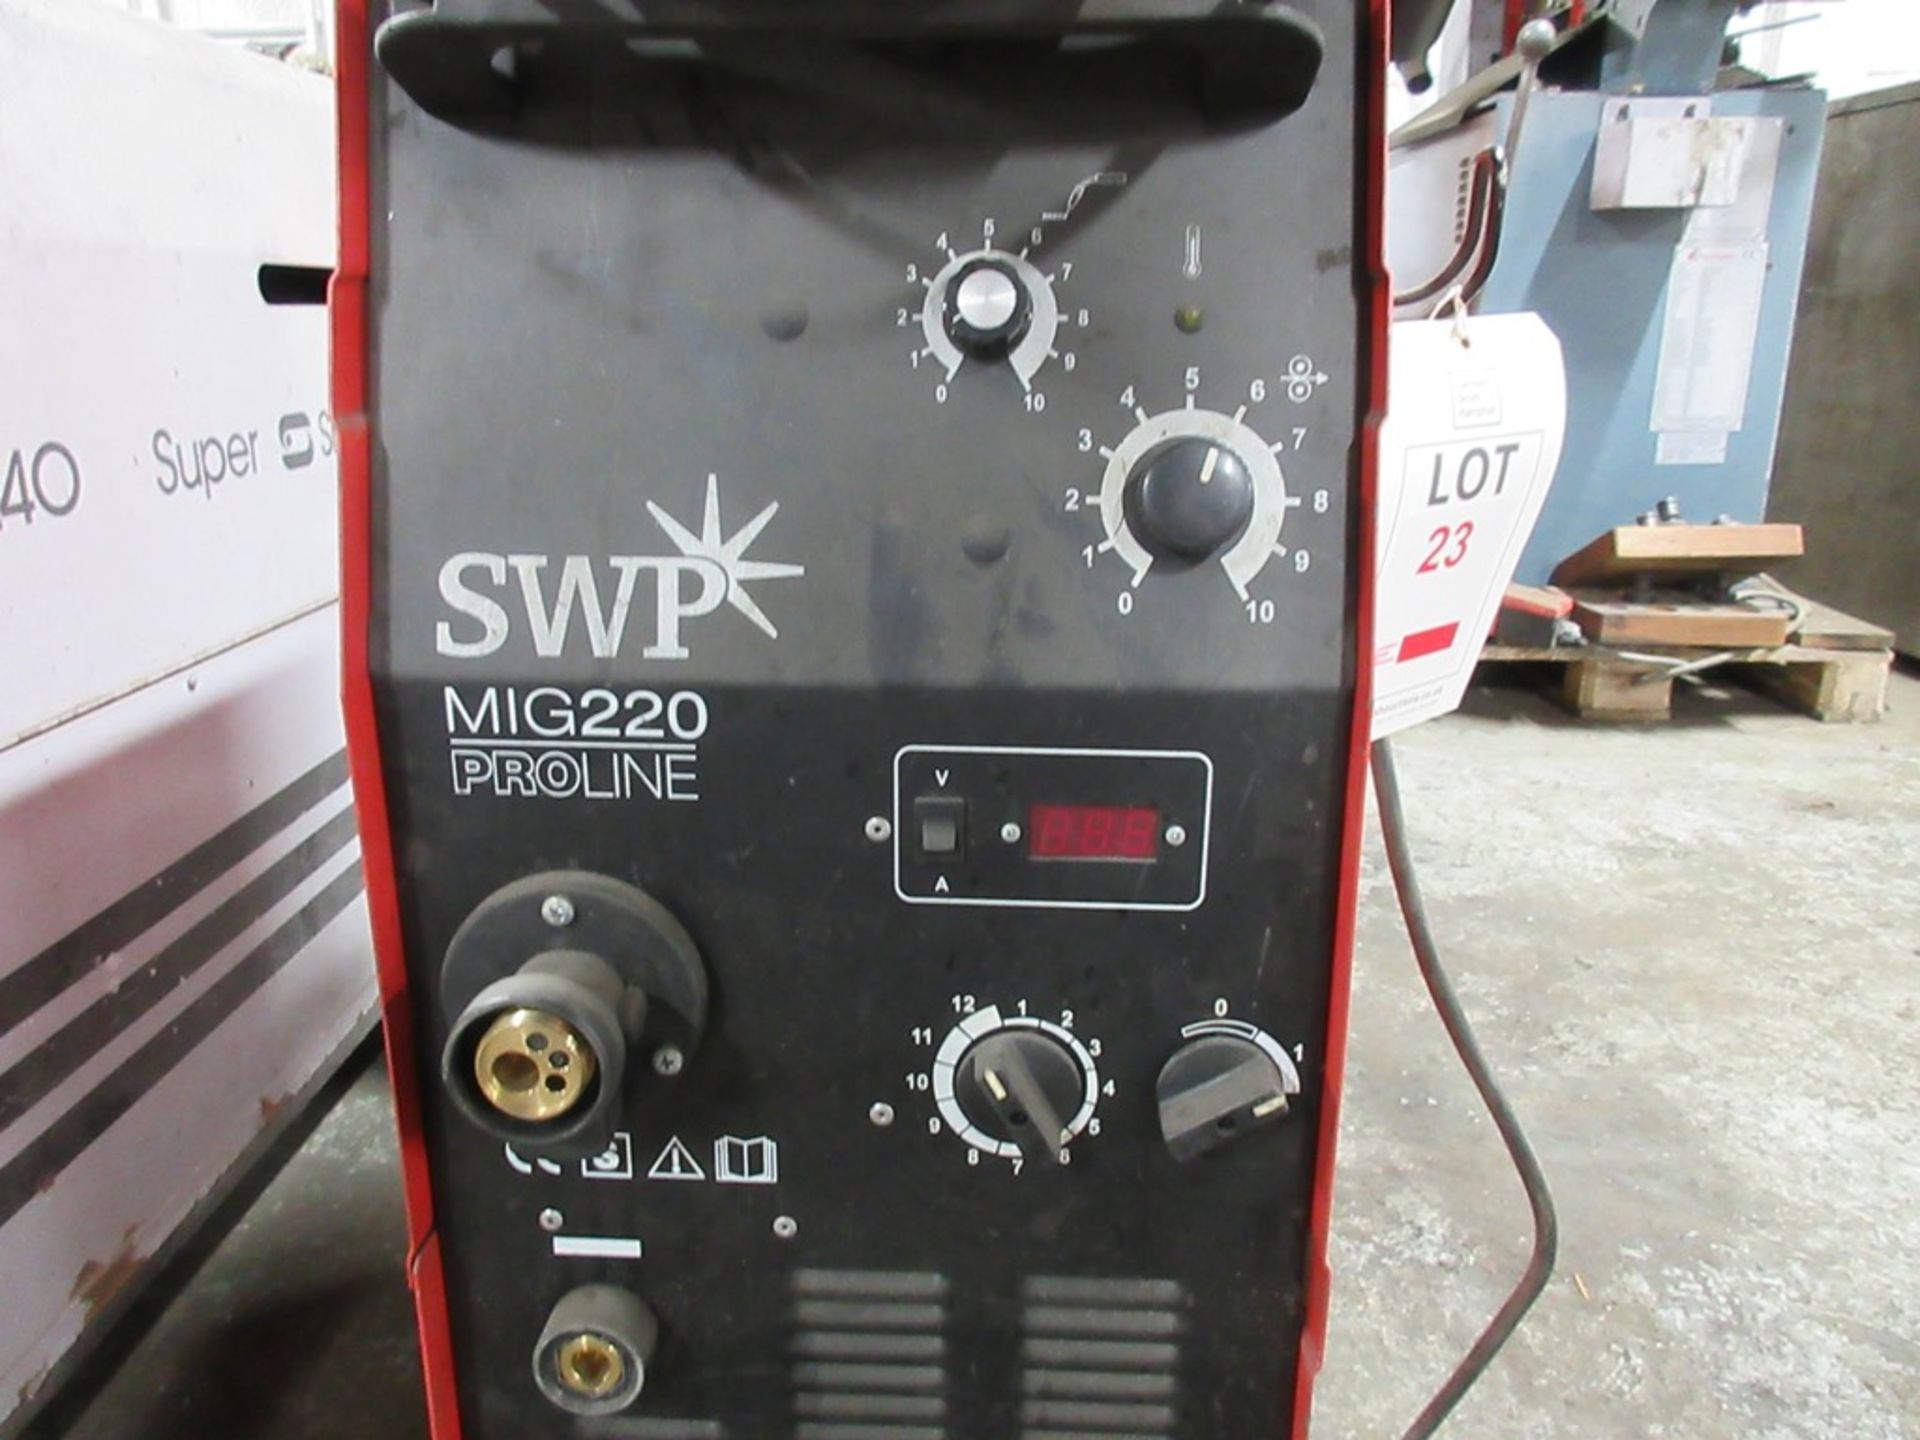 SWP Mig 220 Proline mig welder, serial no. 4050556 - Image 3 of 5